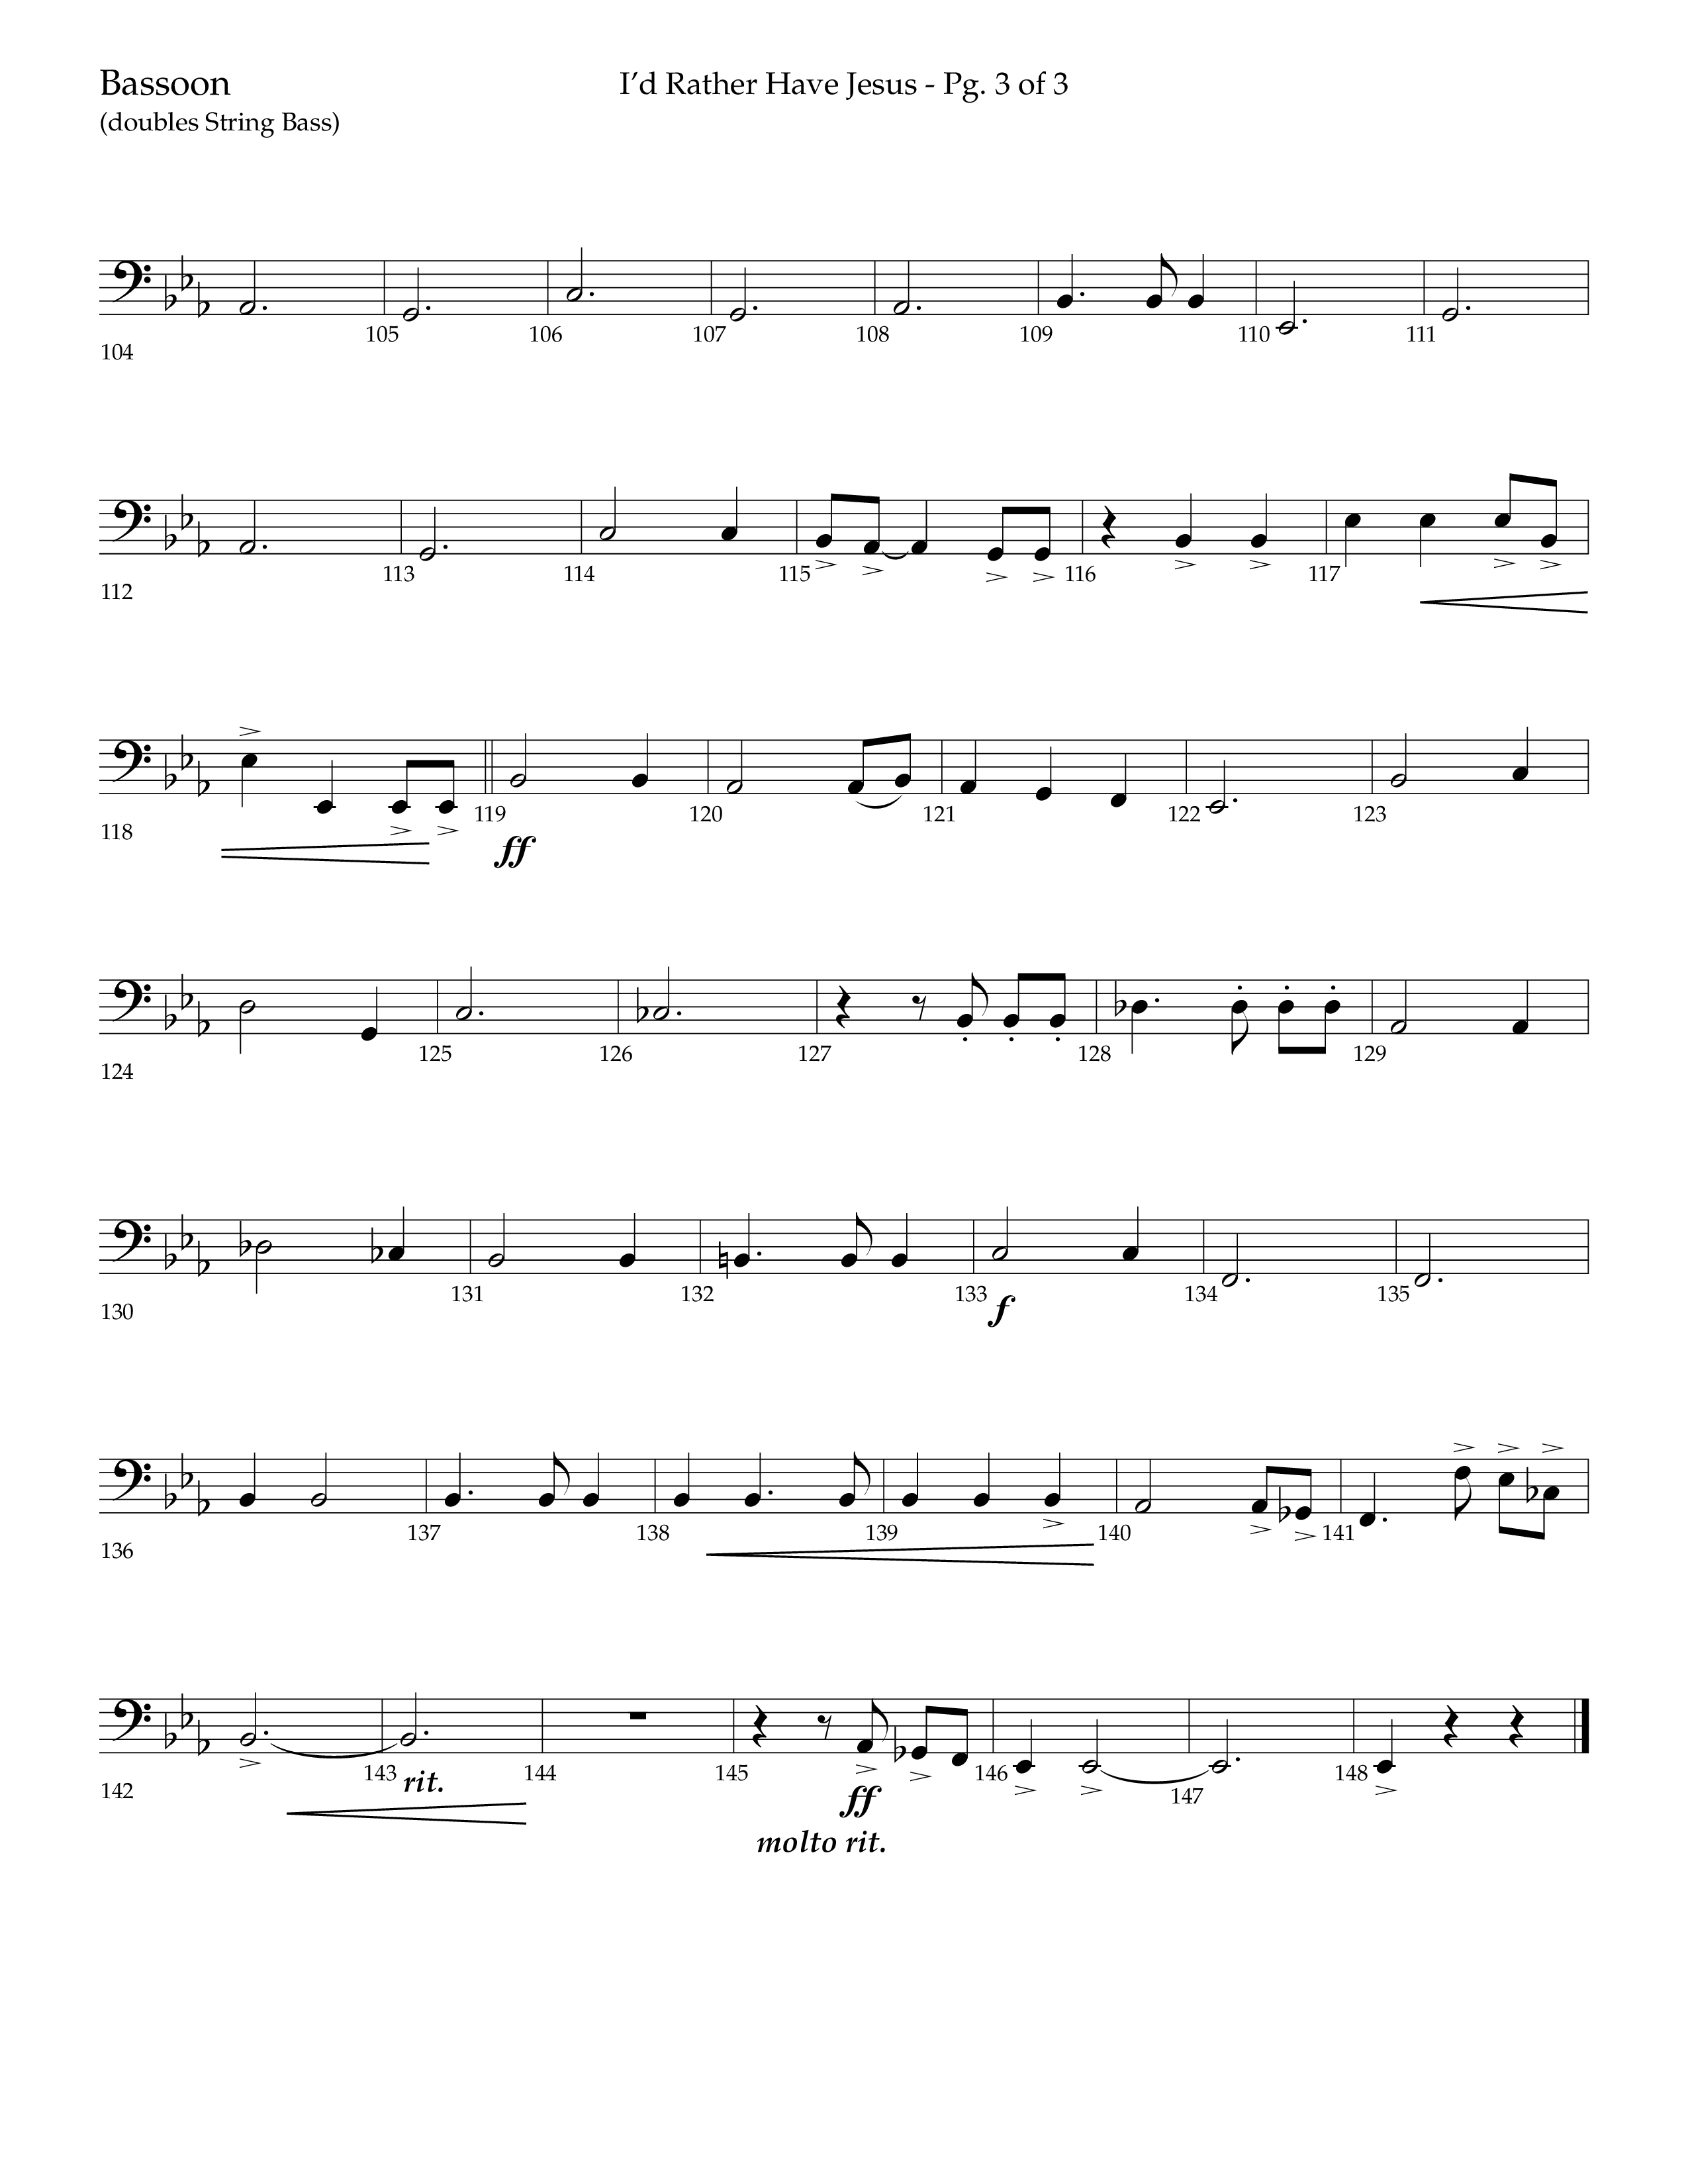 I'd Rather Have Jesus (Choral Anthem SATB) Bassoon (Lifeway Choral / Arr. Richard Kingsmore)